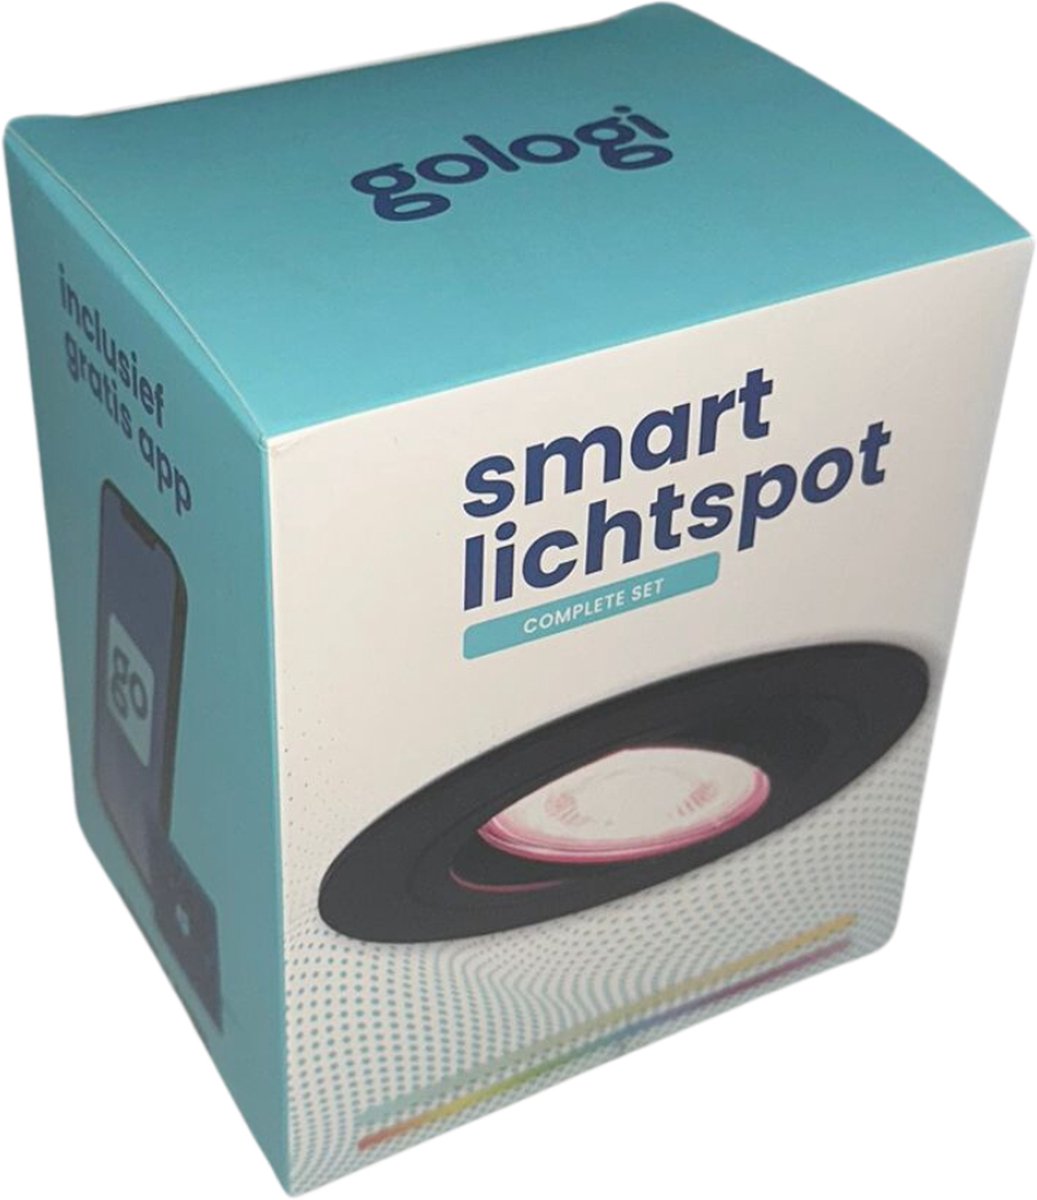 Gologi Slimme Inbouwspots -  Smart LED Downlight Dimbaar - Kantelbaar - RGB+CCT Licht - Gu10 LED Lamp -  Zwart